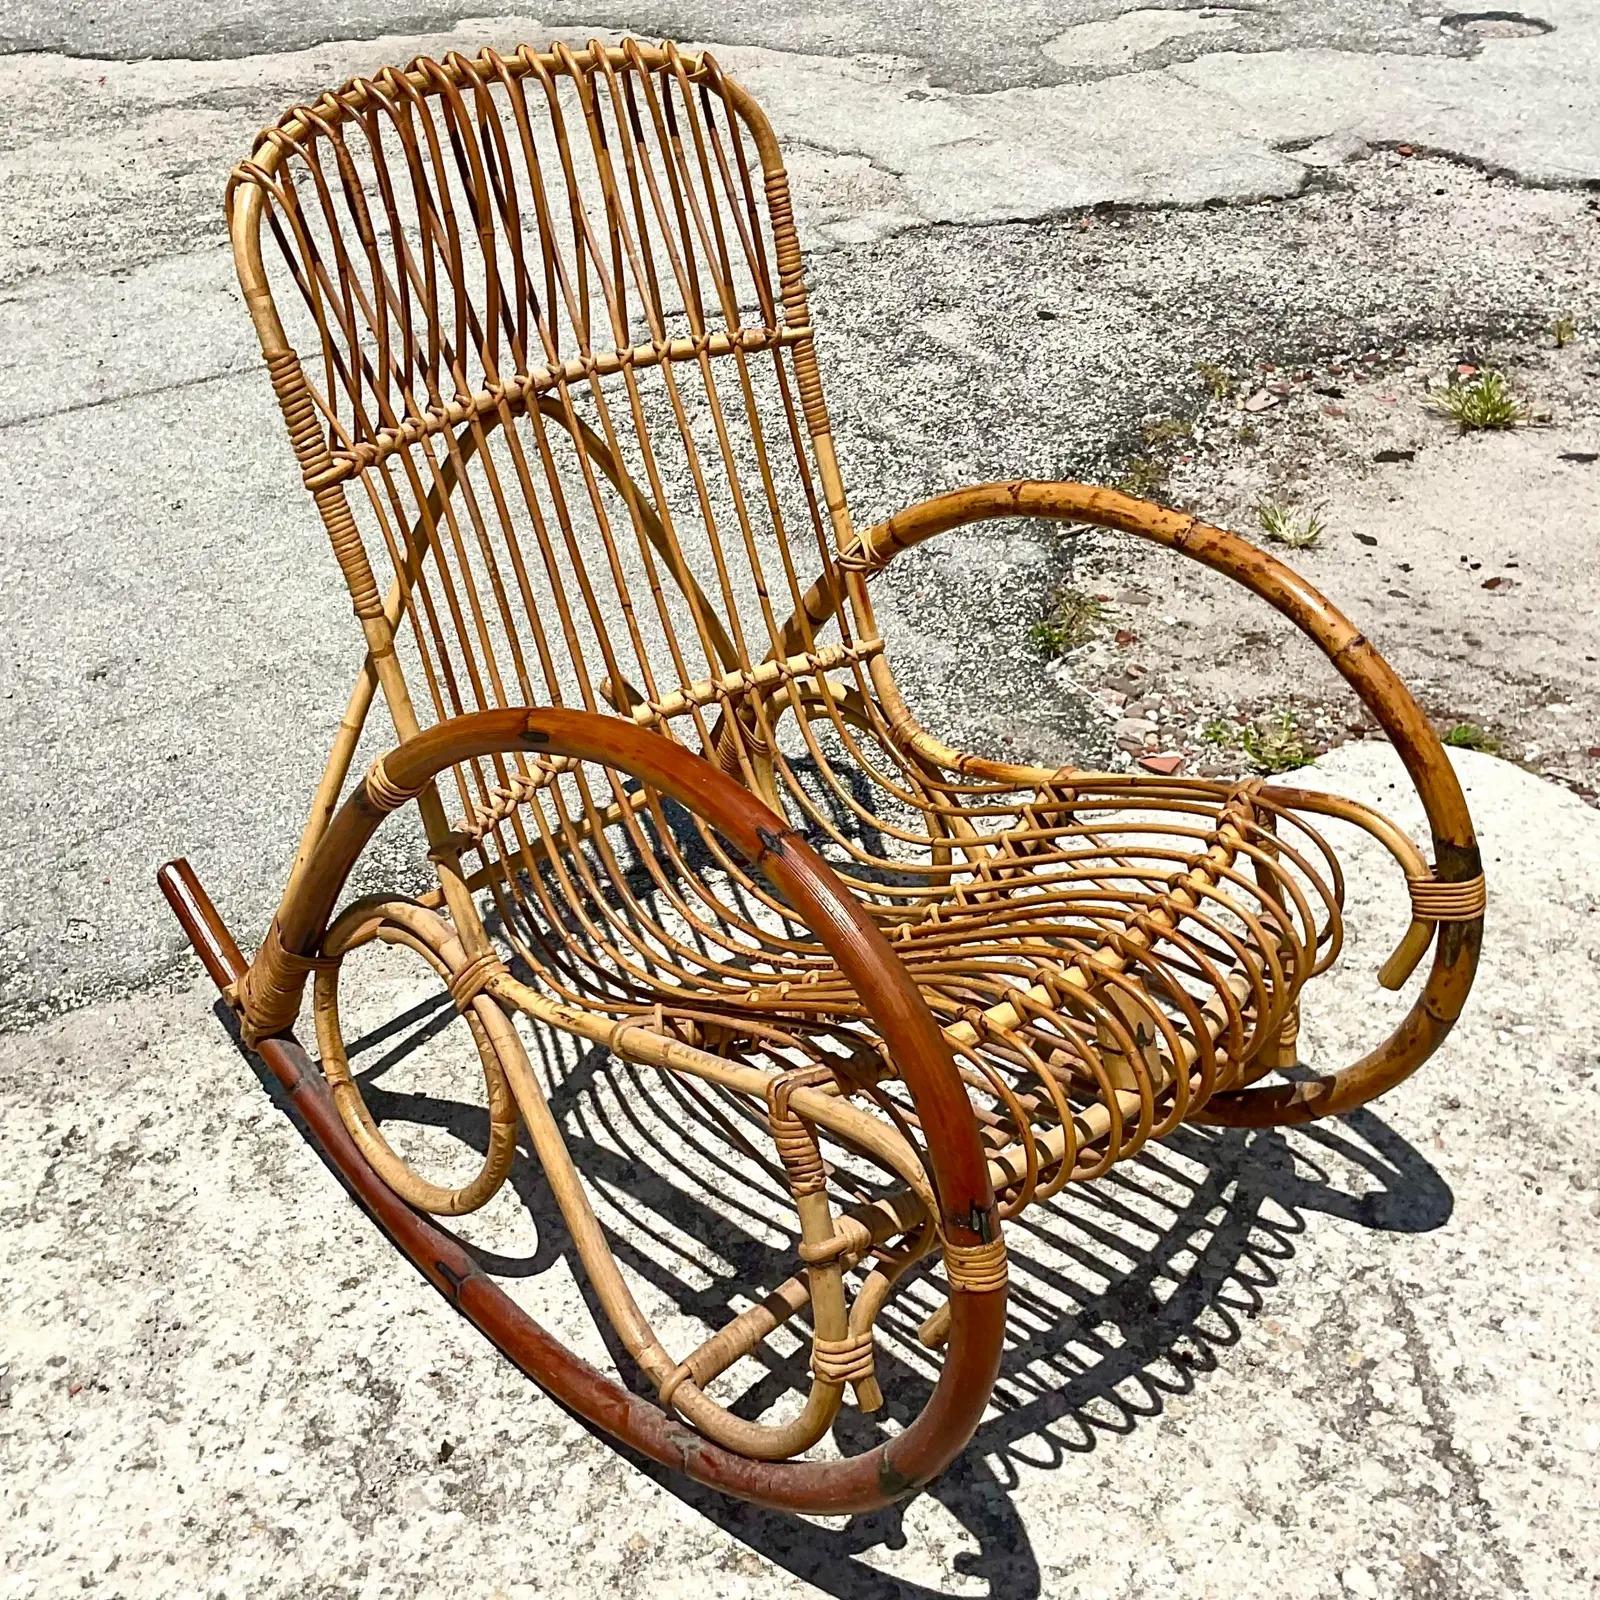 Fabuleux fauteuils à bascule vintage Coastal. Magnifique rotin courbé en deux tons de brun. Acquis d'une propriété de Palm Beach.